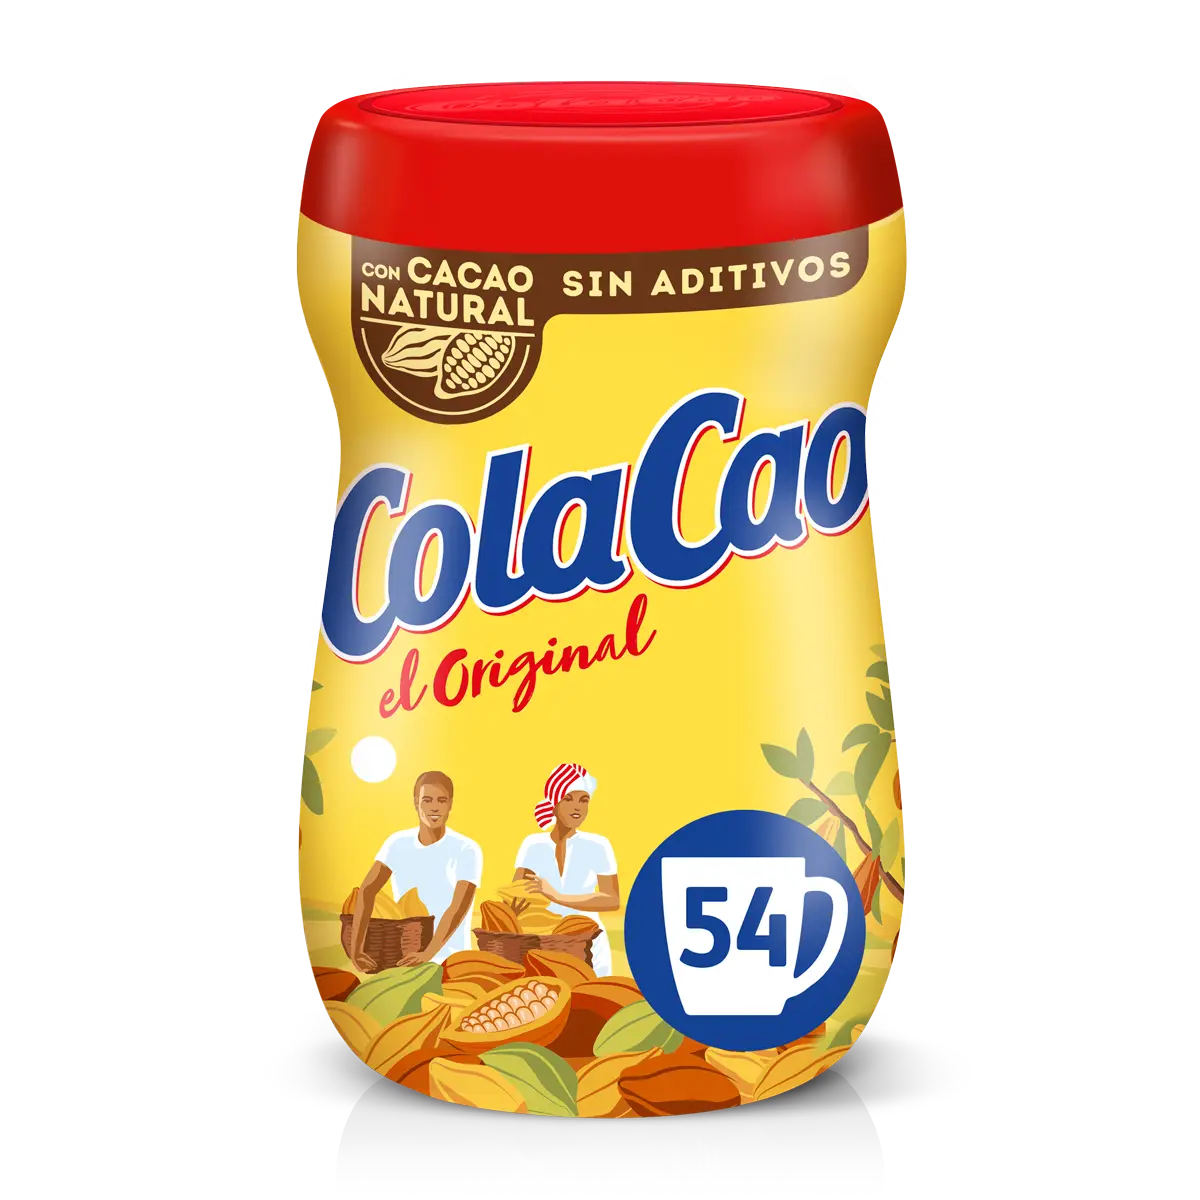 Original cacao soluble estuche 6 sobres · COLACAO · Supermercado